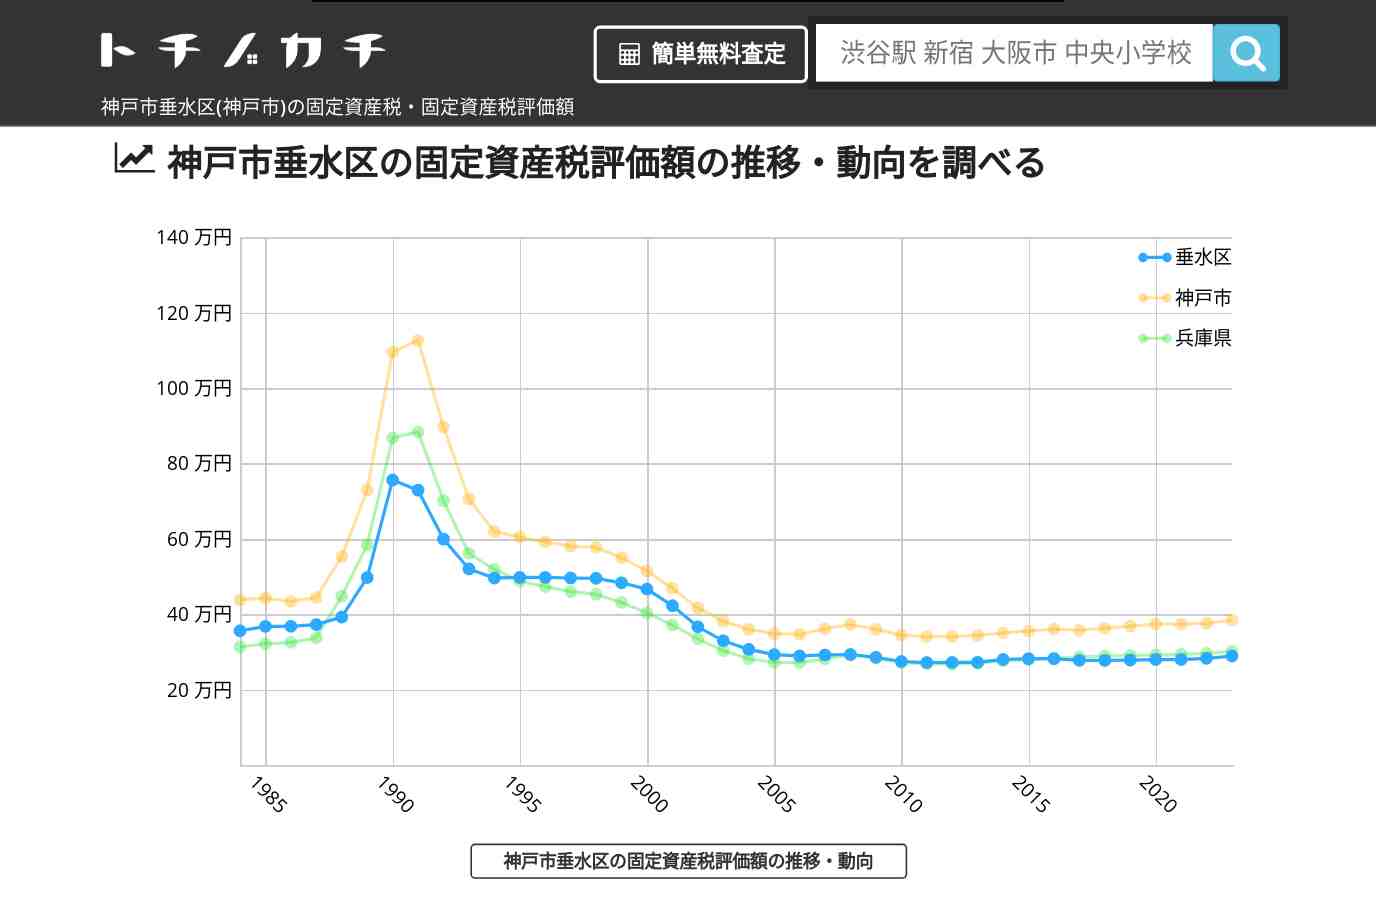 多聞南小学校(兵庫県 神戸市 垂水区)周辺の固定資産税・固定資産税評価額 | トチノカチ